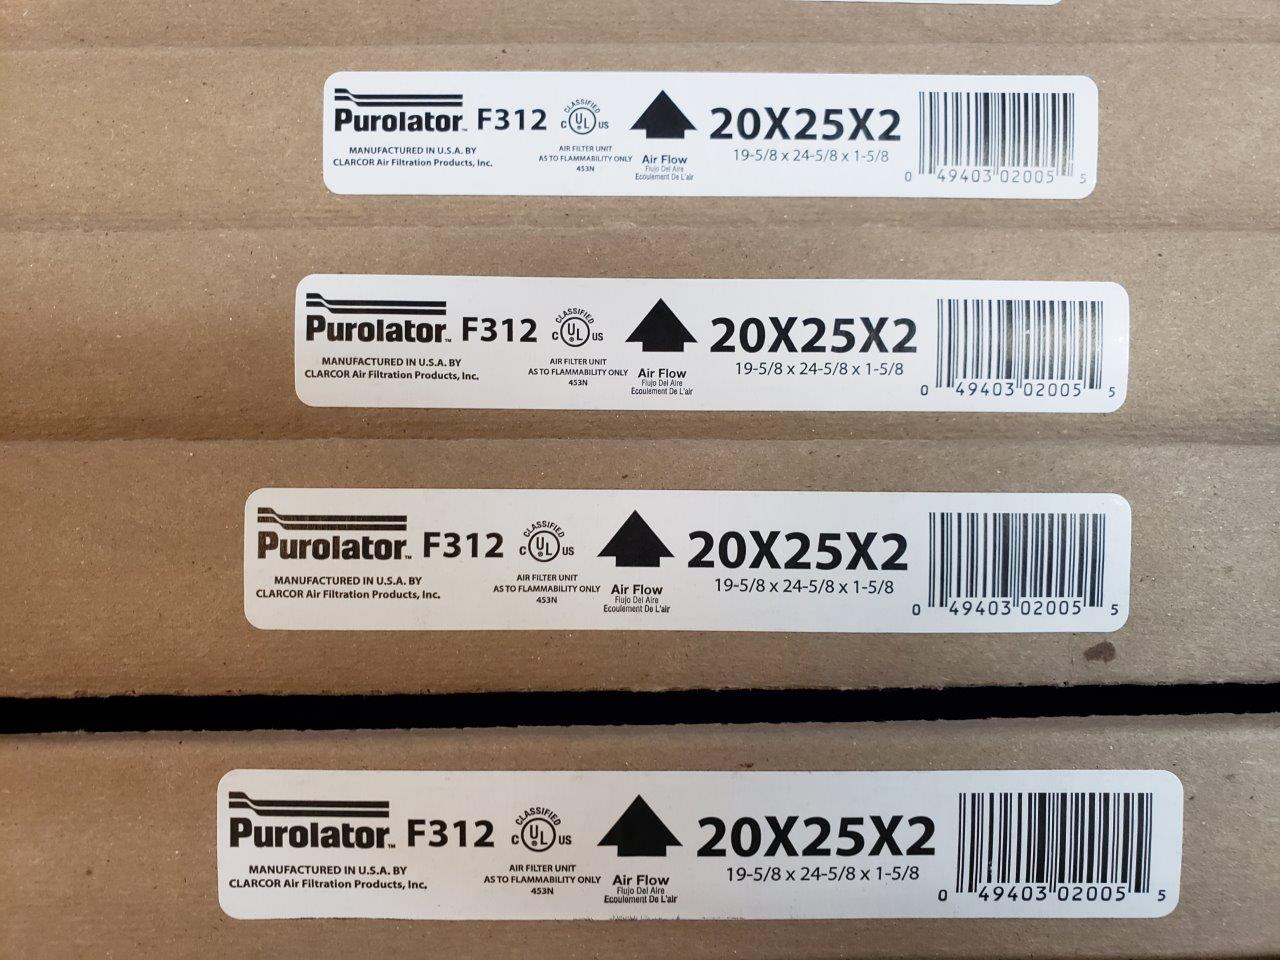 20x25x2 Furnace Air Filters (Box of 10) Purolator F312 Std2 Fiberglass Disposable Panel Filter 20W x 25H x 2D 5039002005